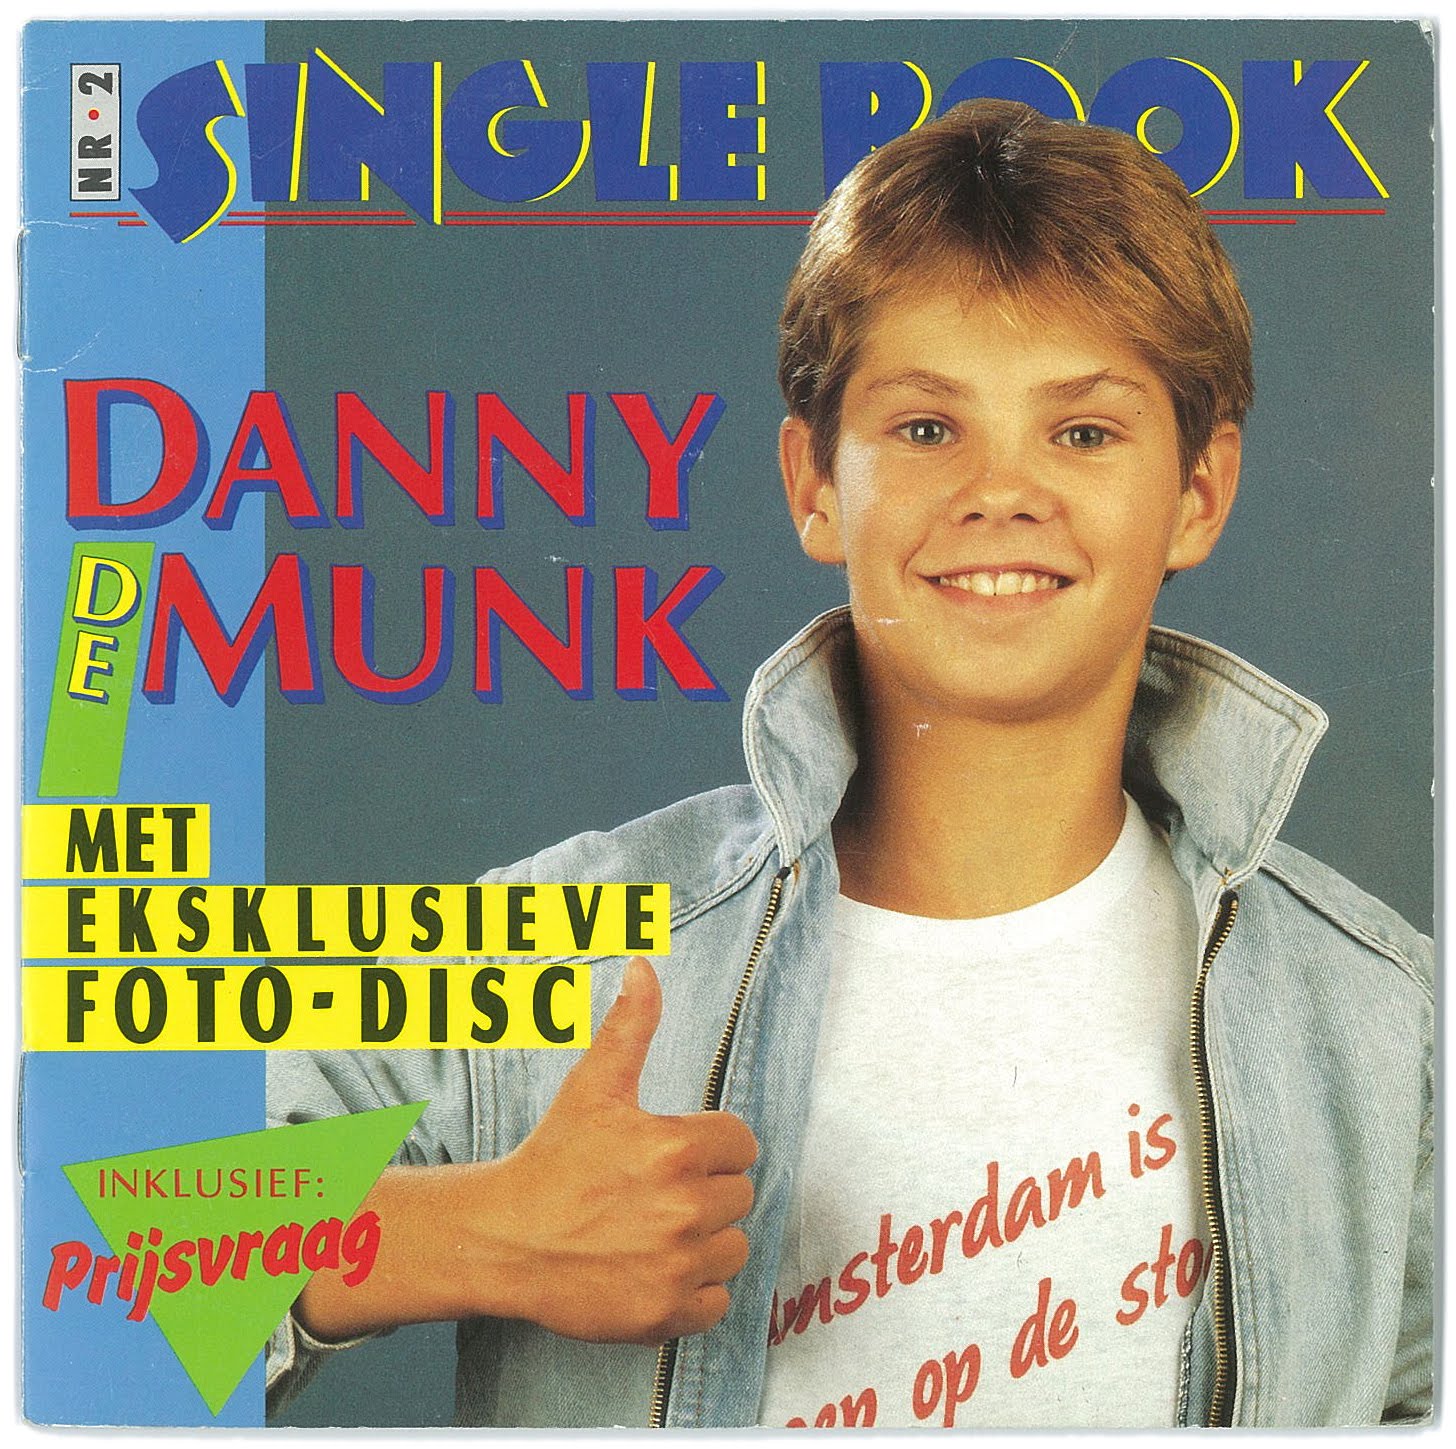 General photo of Danny de Munk